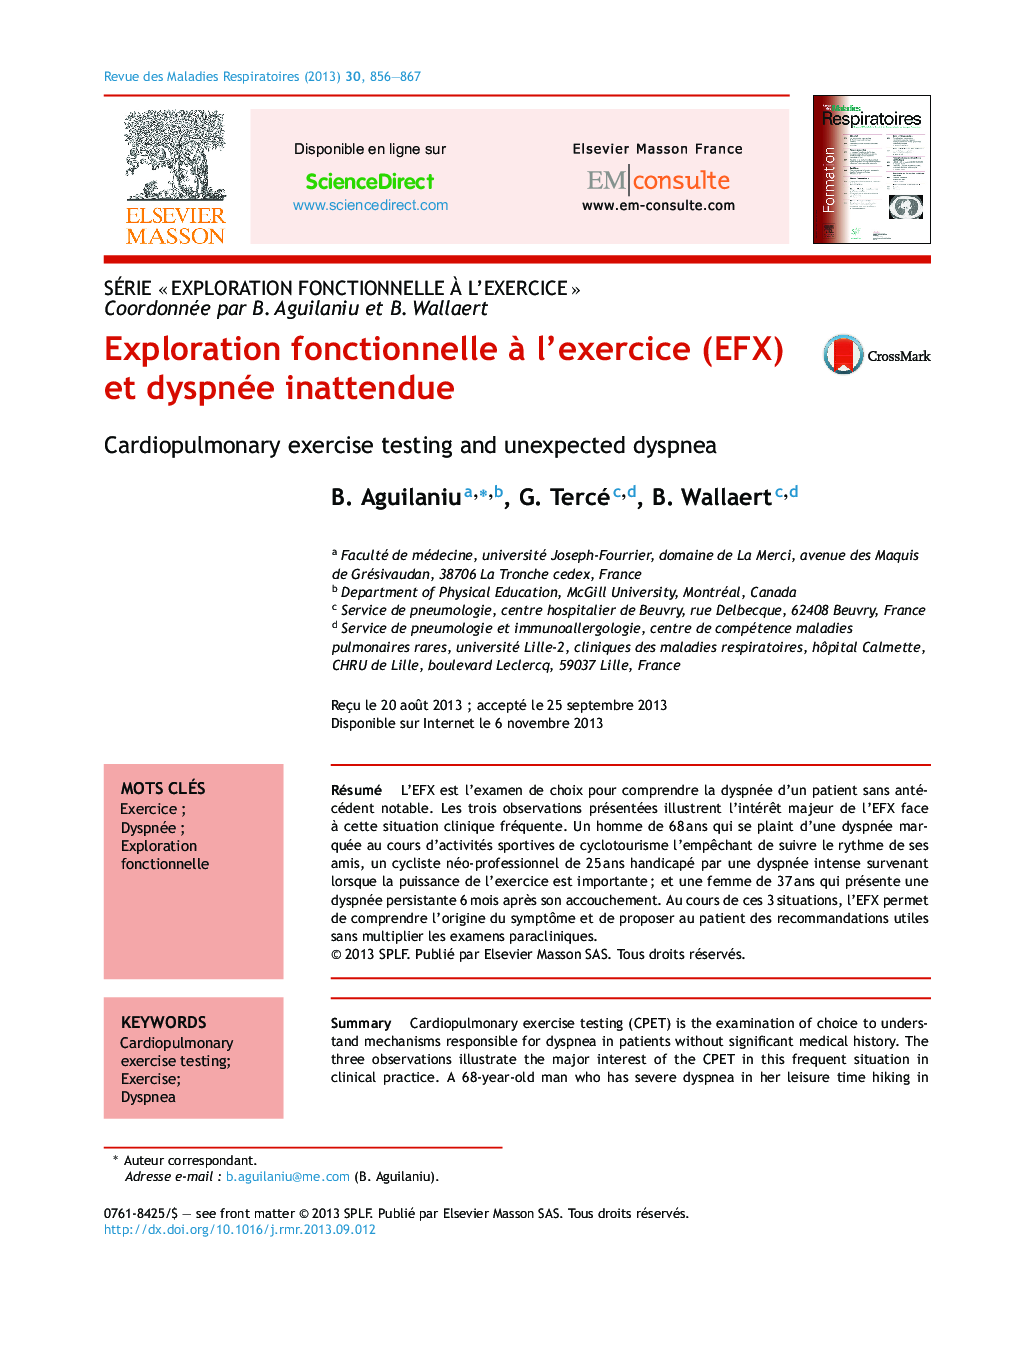 Exploration fonctionnelle Ã  l'exercice (EFX) et dyspnée inattendue